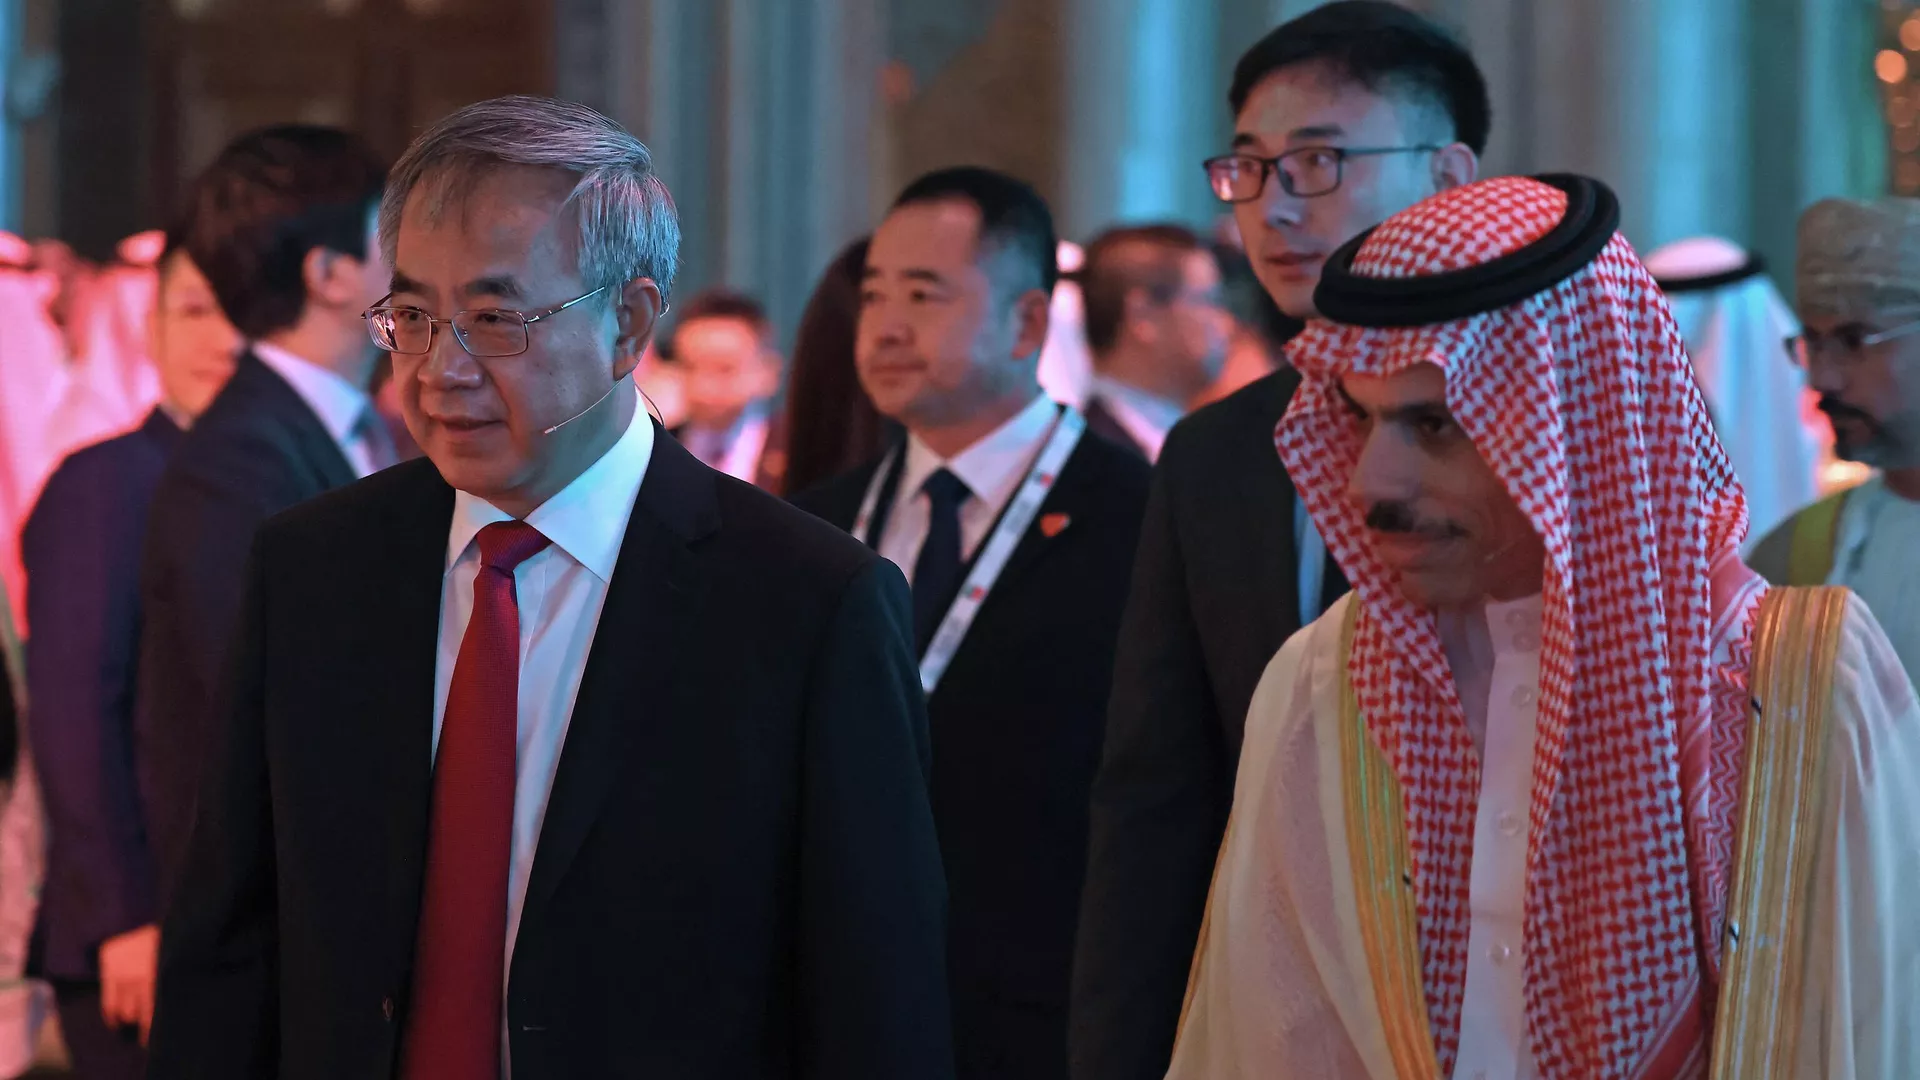 沙特王储引领国家转向“国家资本主义” - FT中文网